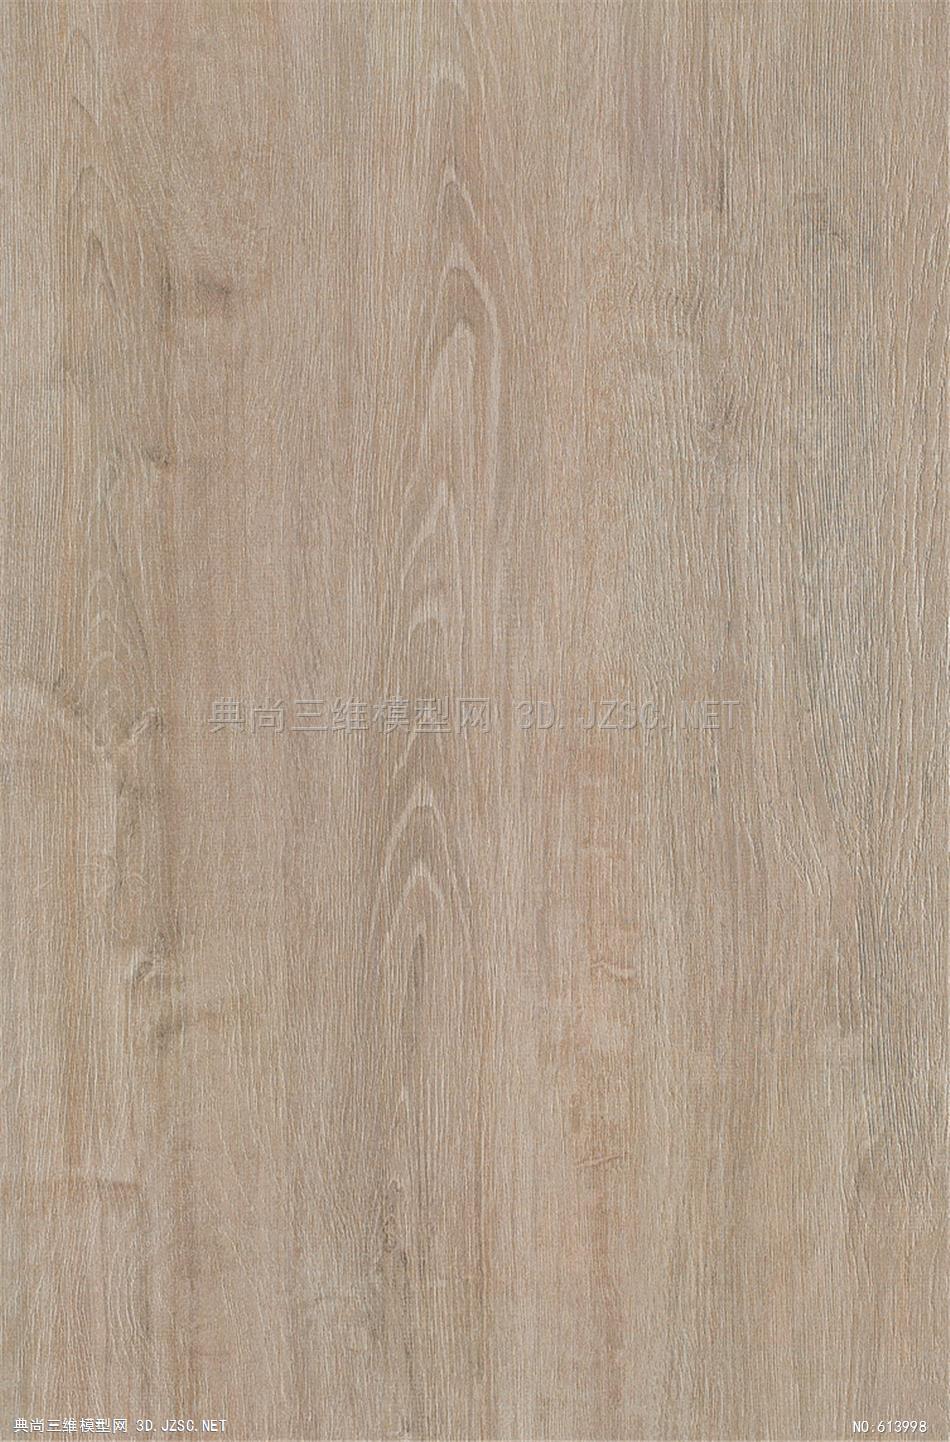 木饰面木纹木材高清材质贴图214材质贴图